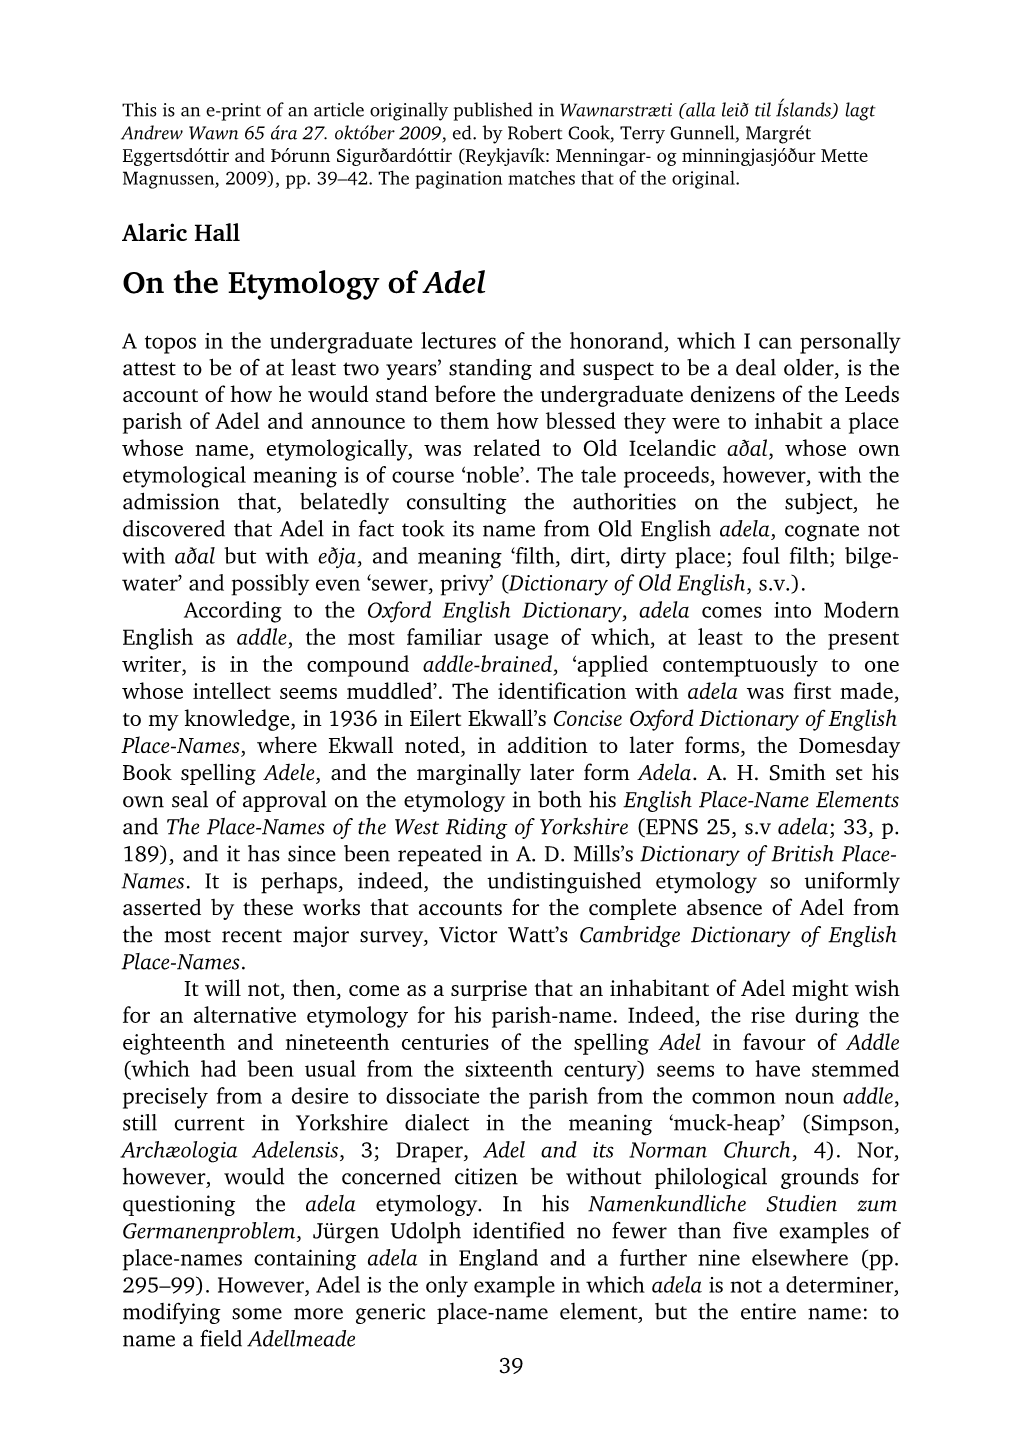 Alaric Hall on the Etymology of Adel